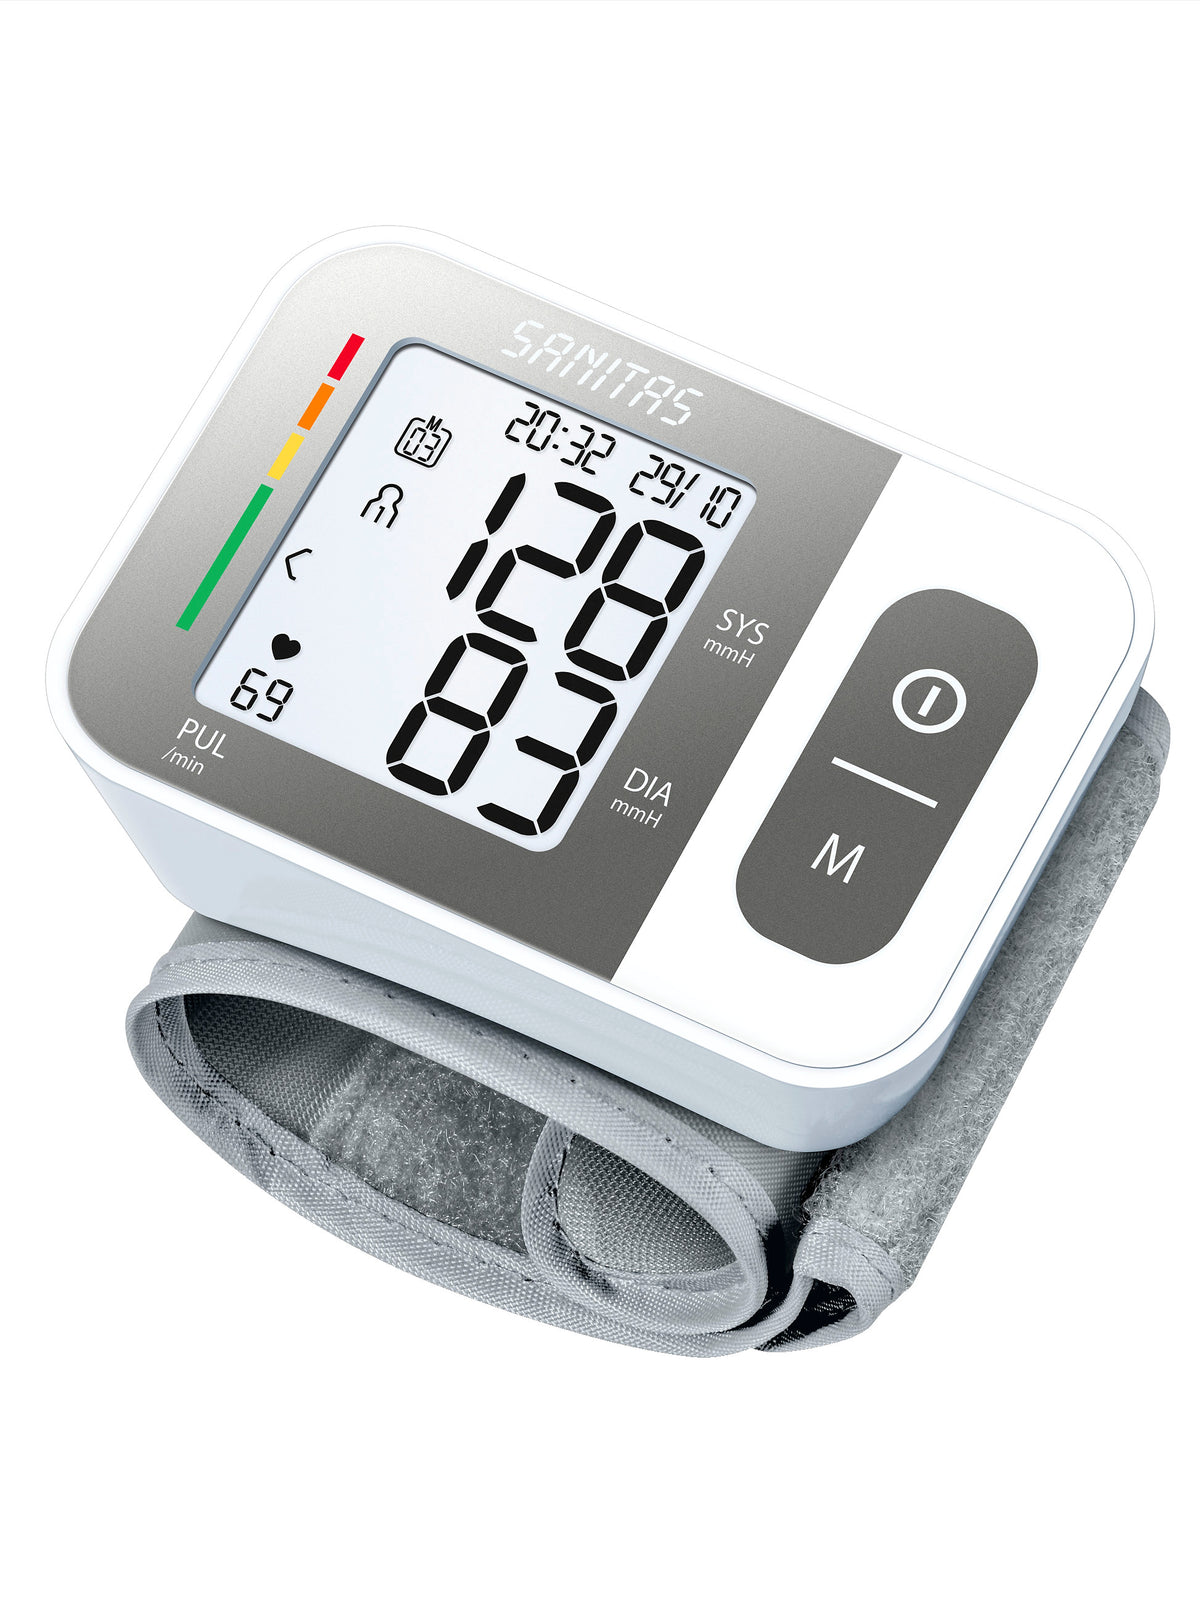 Handgelenk-Blutdruckmessgerät SBC 15